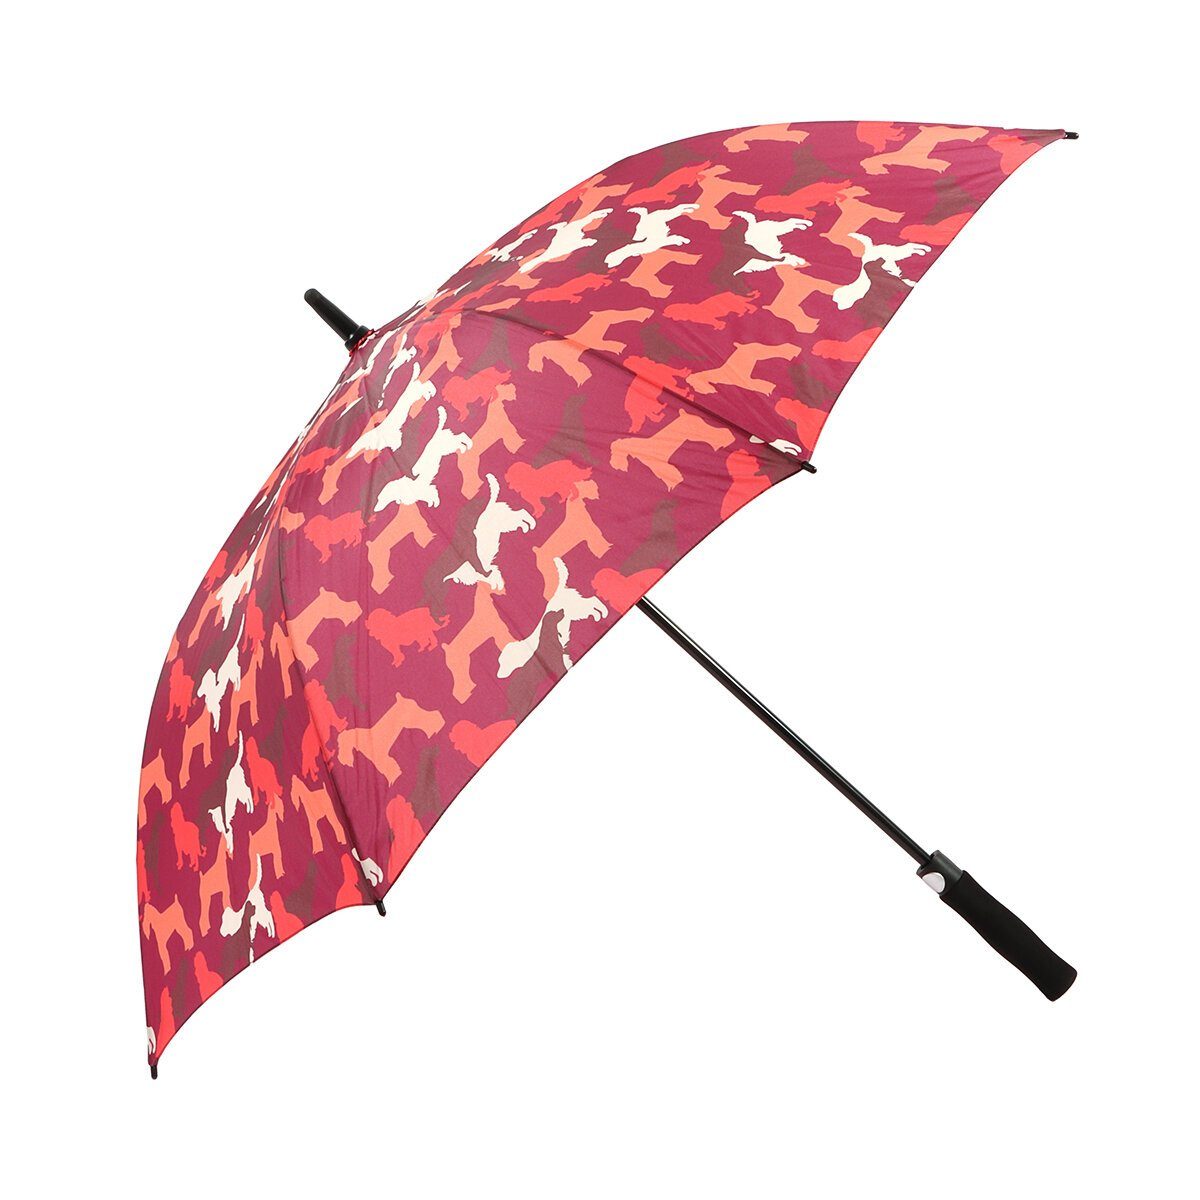 BIGGDESIGN Langregenschirm Biggdesign Regenschirm Dogs